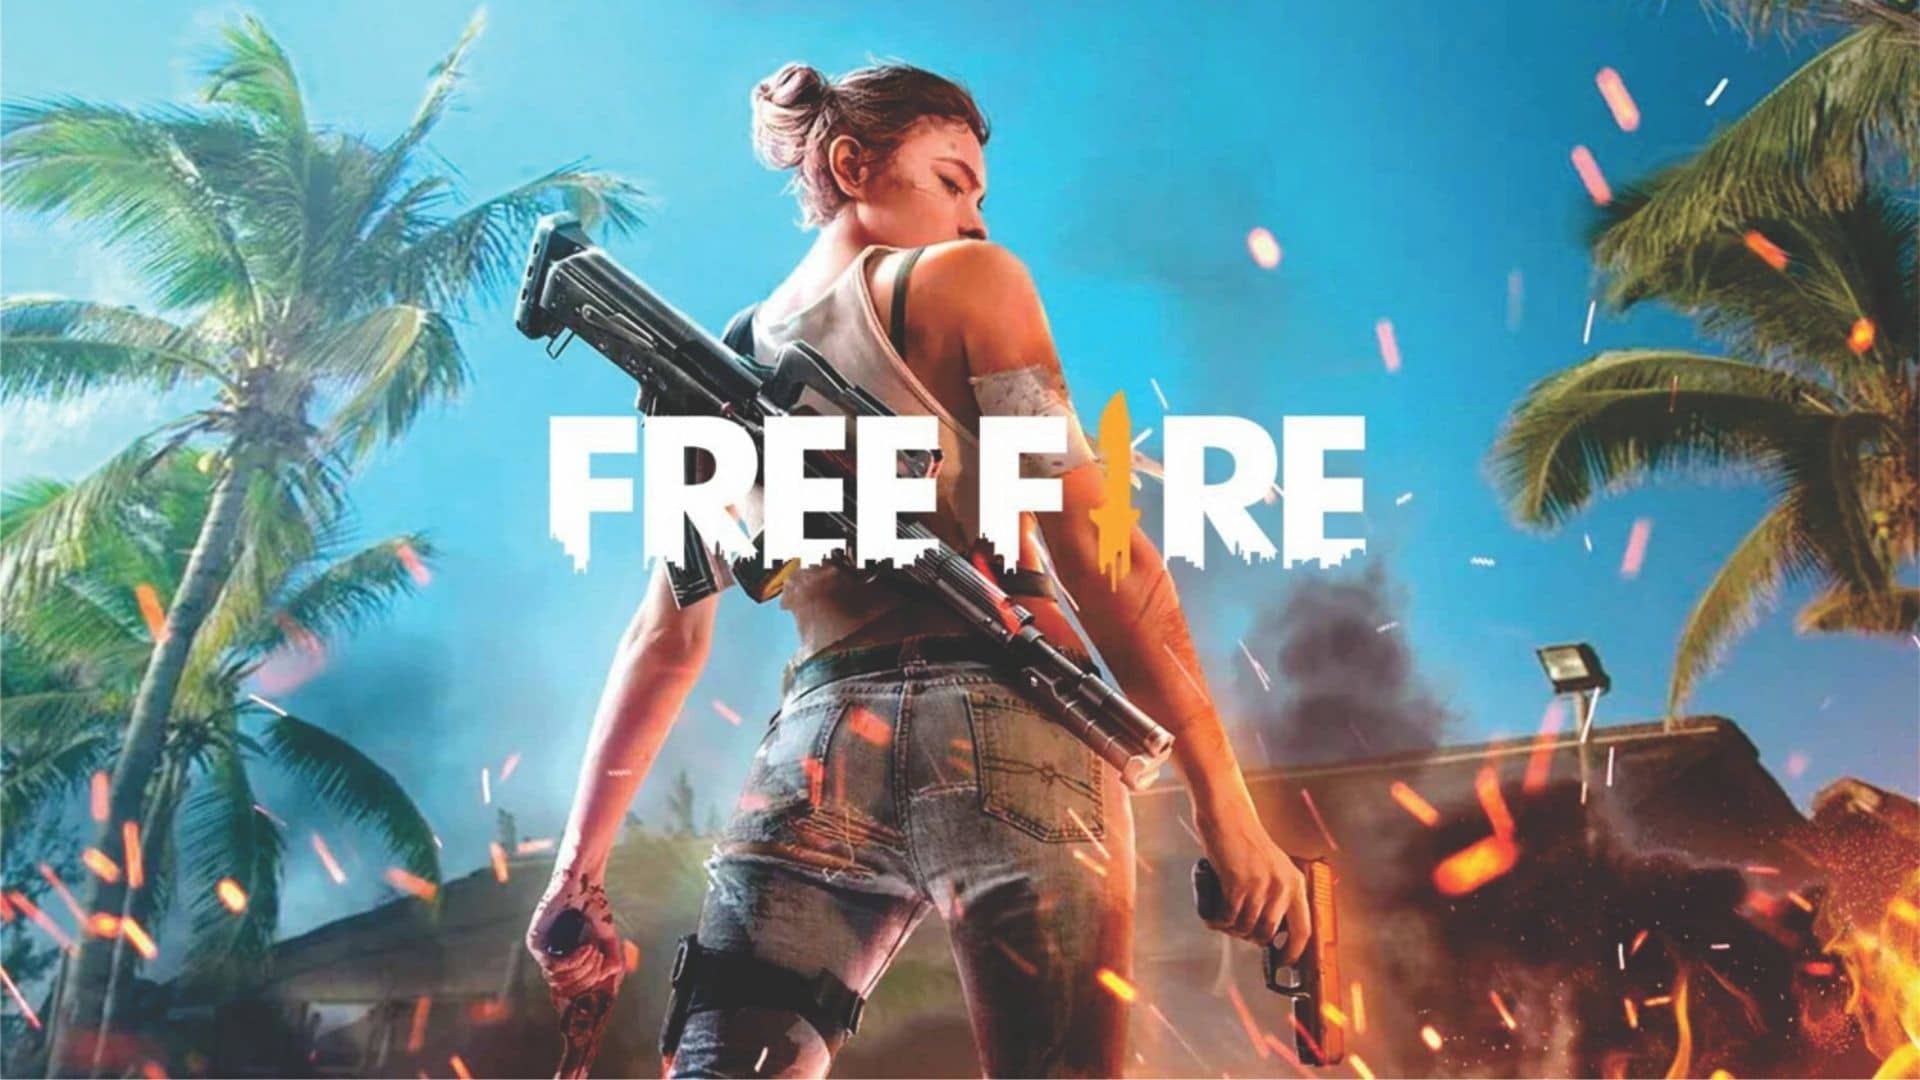 O que o jogo Free Fire ensina?